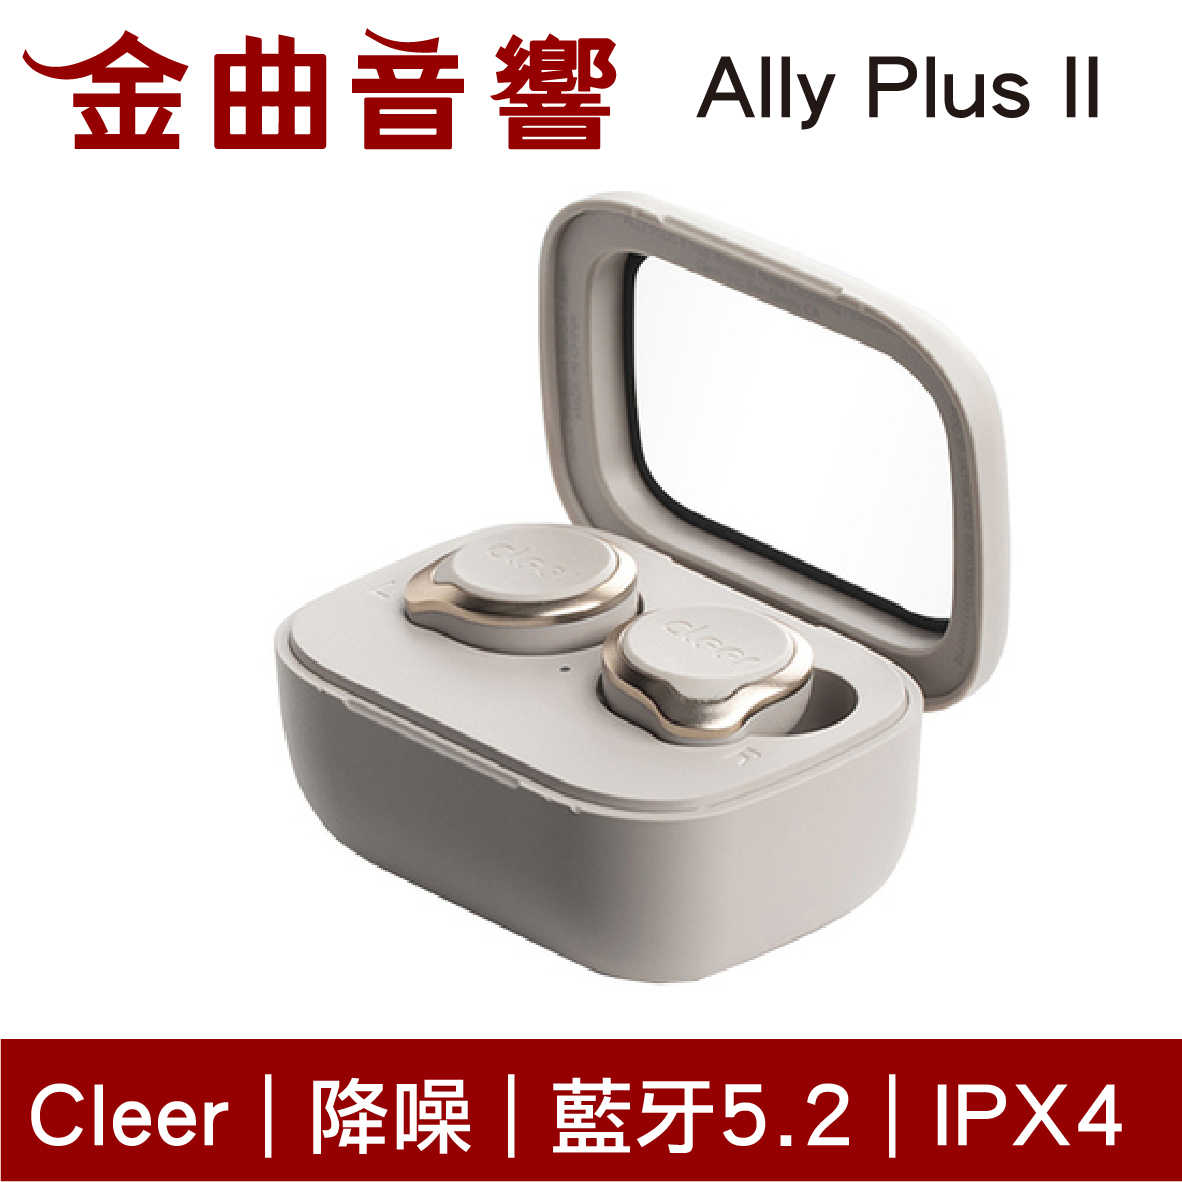 Cleer Ally Plus II 灰色 主動降噪 長效續航 IPX4 6麥克風 真無線 藍牙 耳機 | 金曲音響